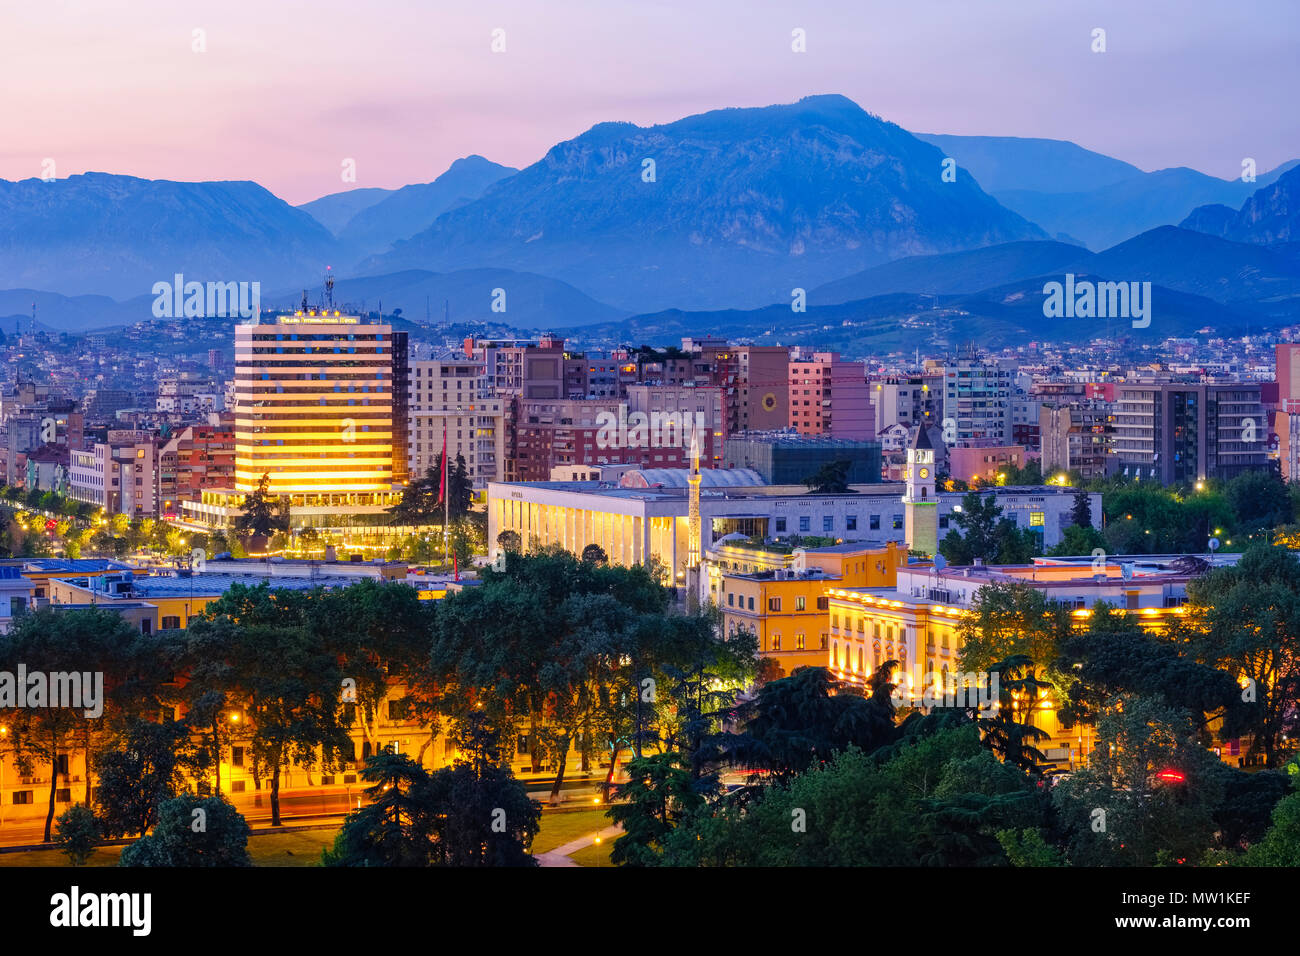 Vista della città e dal centro città con il Palazzo della Cultura, Ethem-Bey moschea e la Torre dell Orologio, montagne nel retro, crepuscolo, Tirana Foto Stock